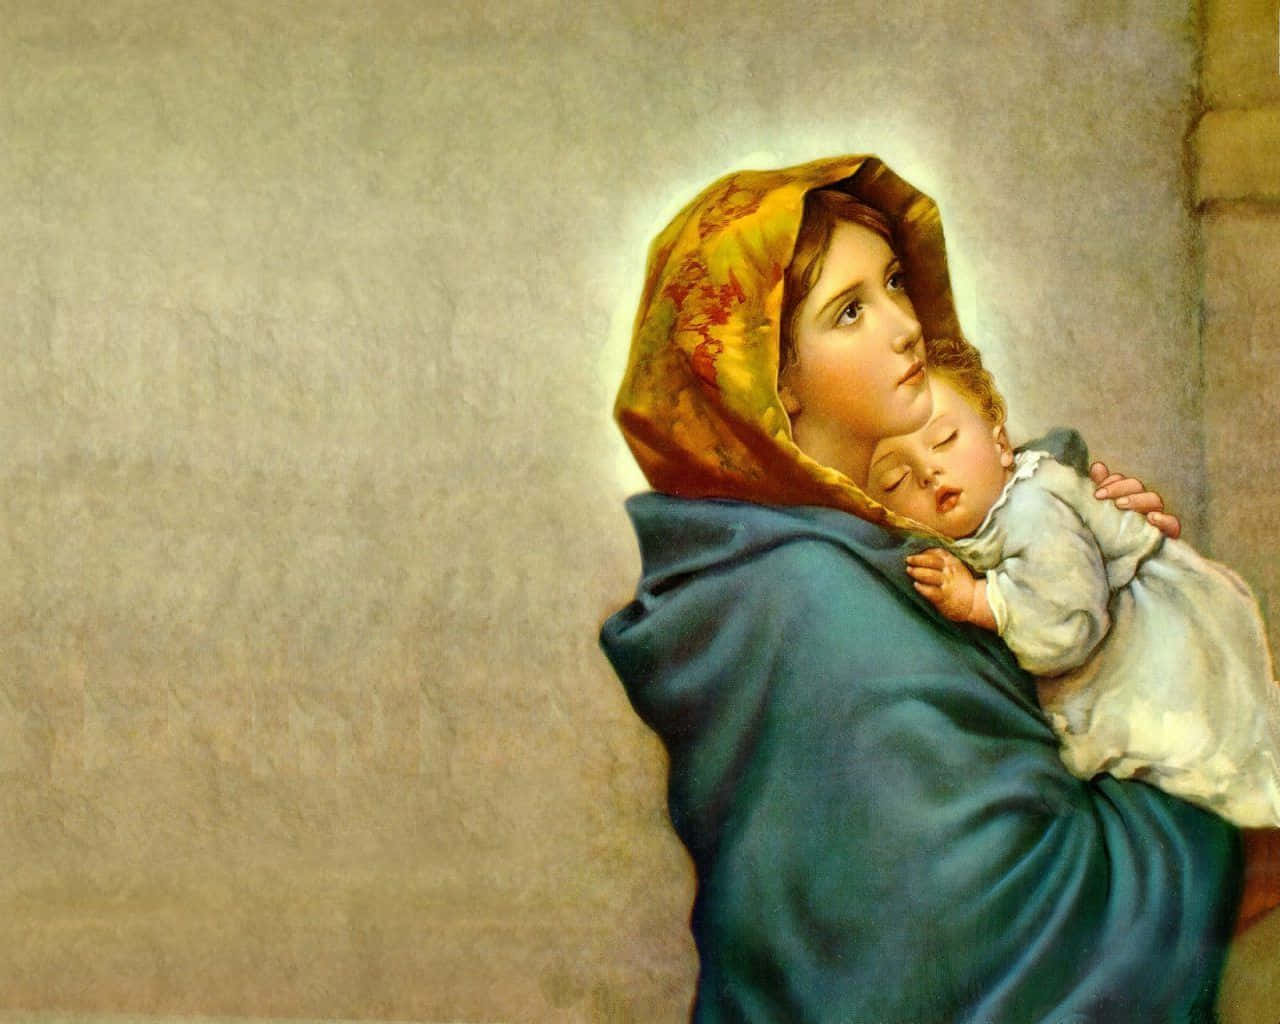 Virgin Mary æret og æret af katolikker over hele verden. Wallpaper